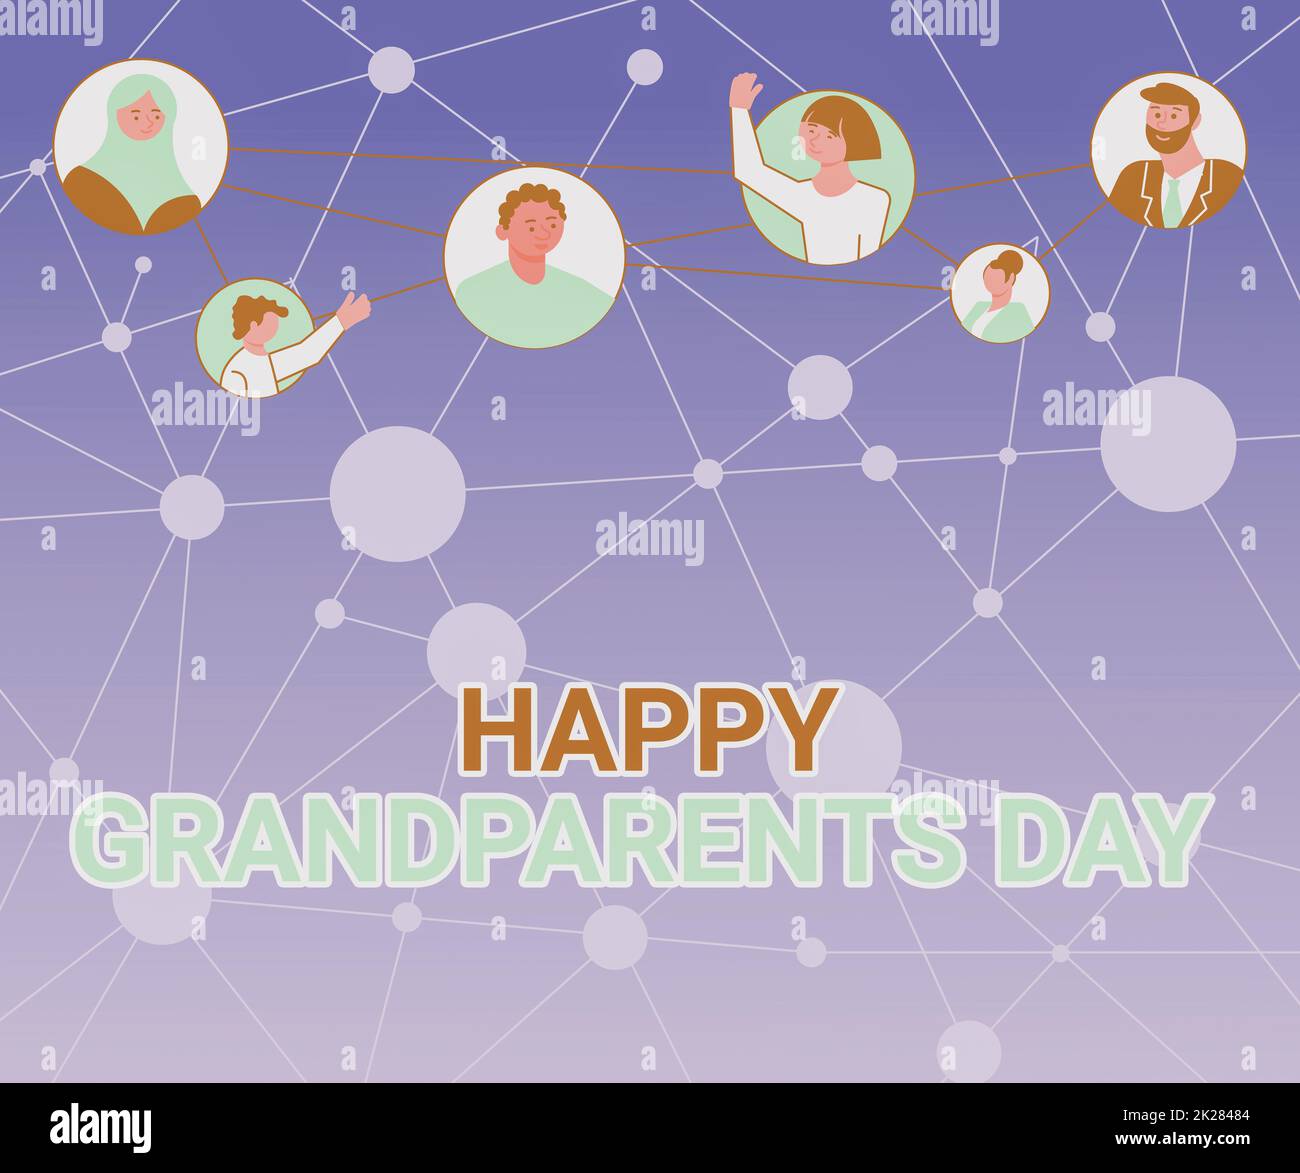 Inspiration mit Schild Happy Grandparents Day. Internetkonzept Nationalfeiertag zur Feier und Ehrung von Großeltern und verschiedenen Menschen im Kreis, die miteinander chatten und soziale Medien vernetzen. Stockfoto